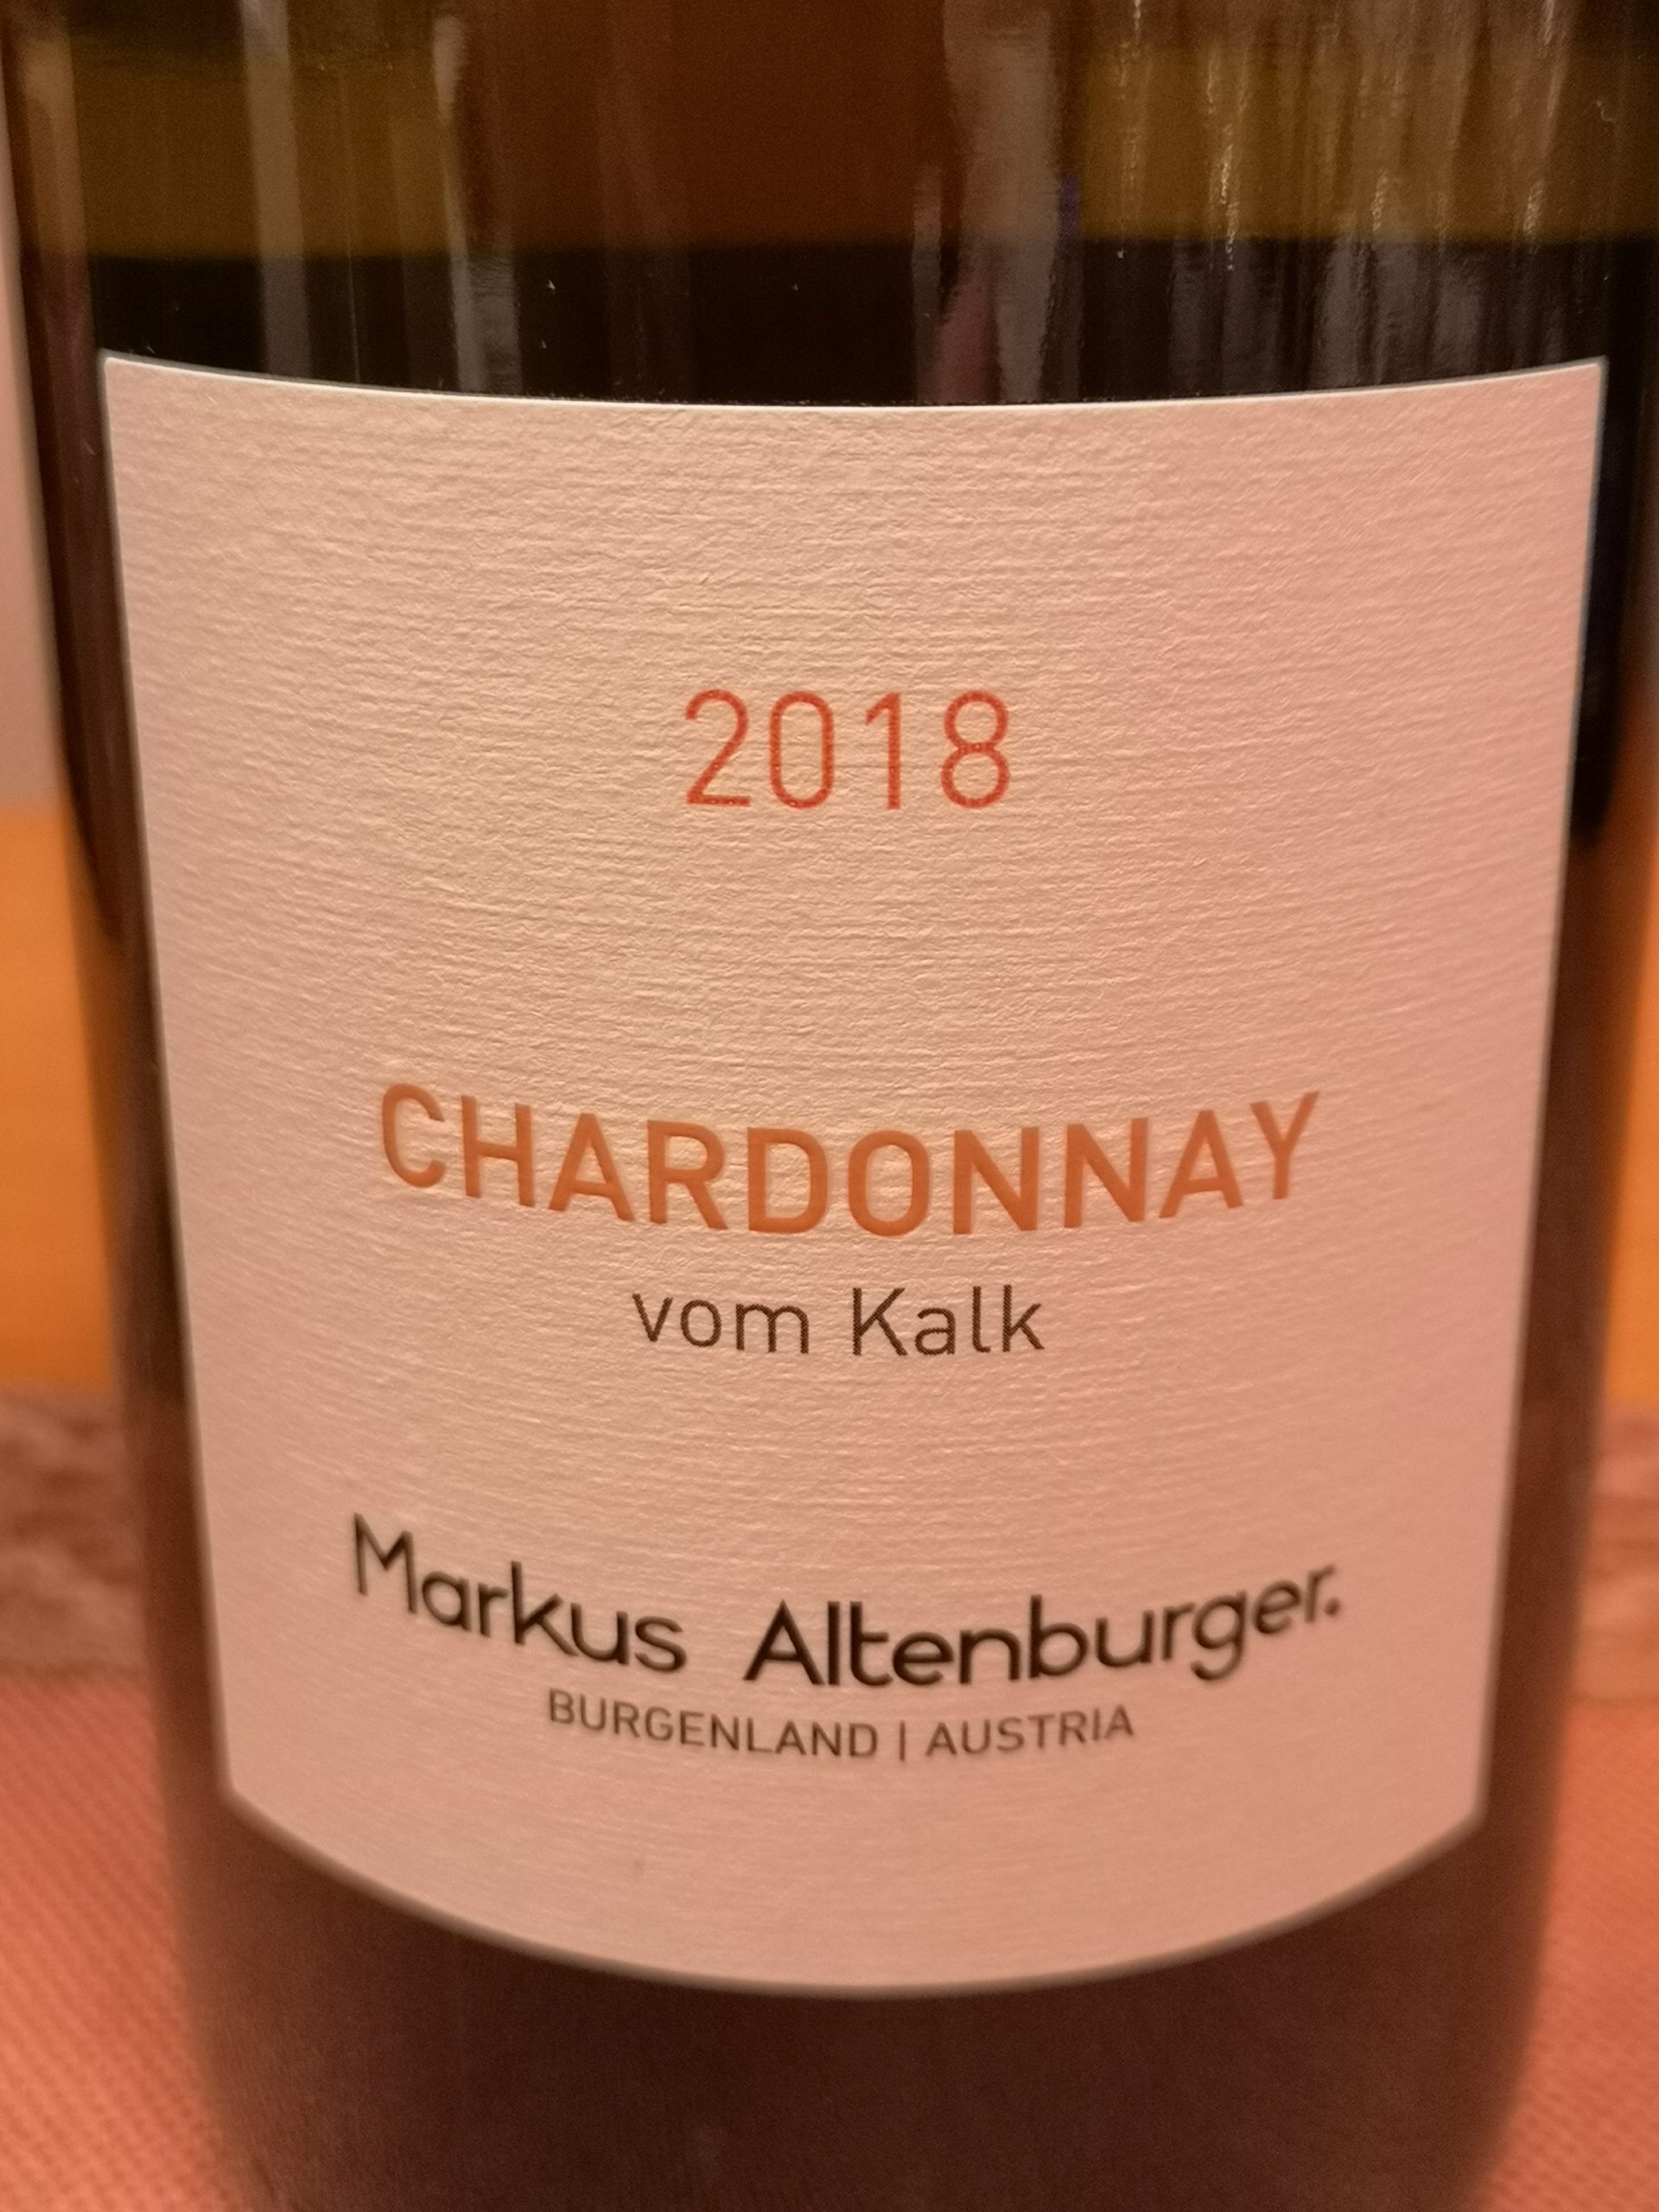 2018 Chardonnay vom Kalk | Markus Altenburger